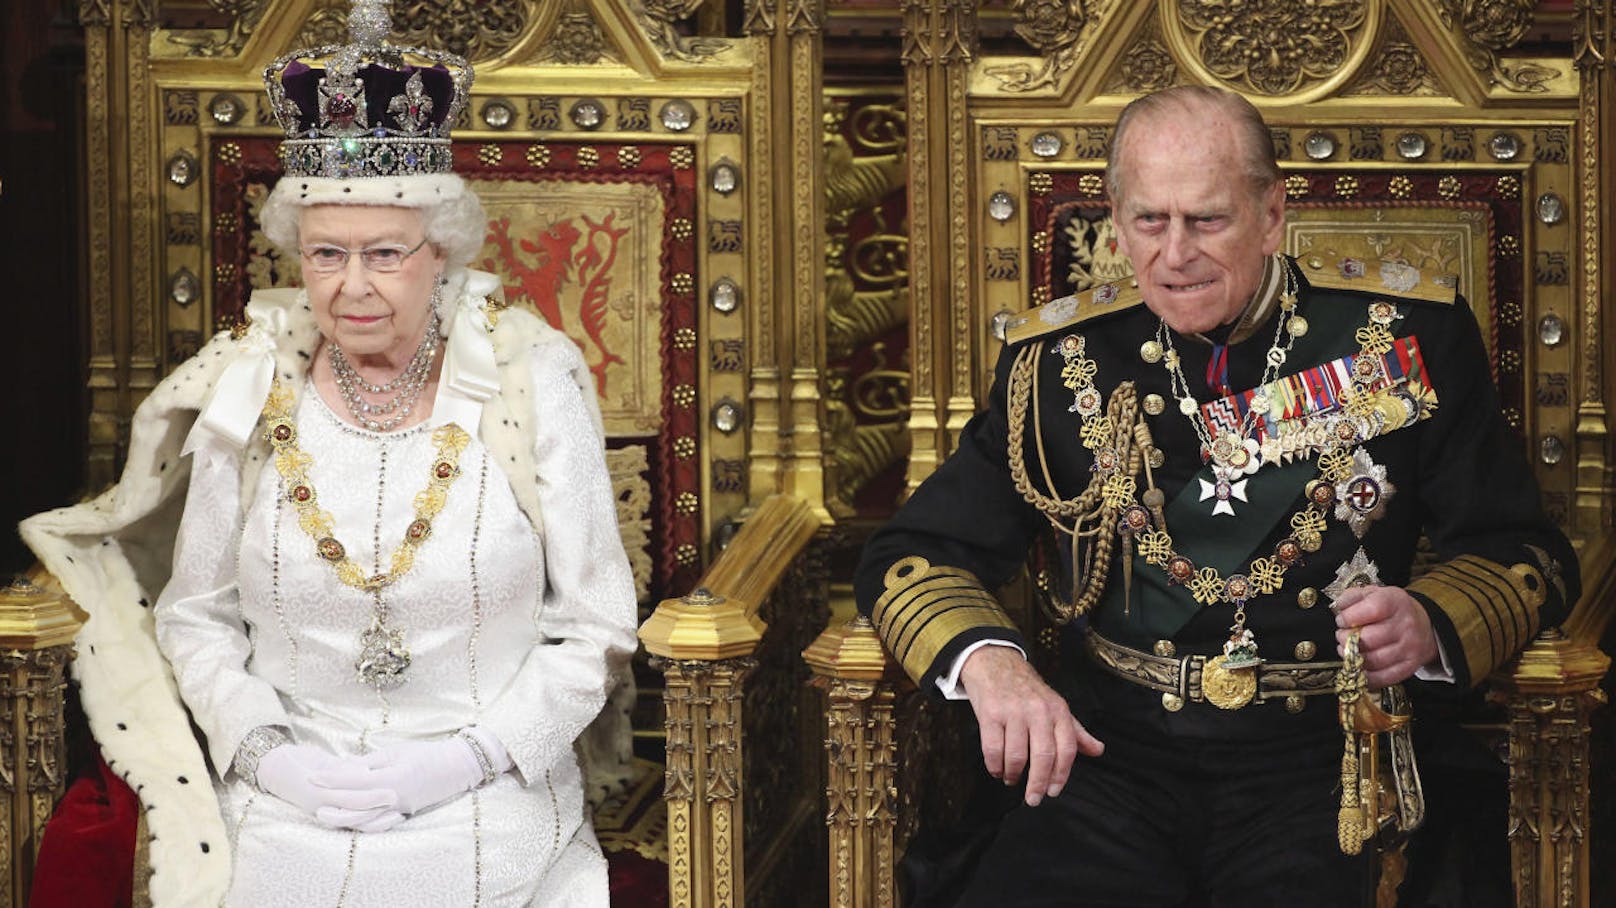 Seit über 70 Jahren ist <strong>Prinz Philip</strong> an der Seite von <strong>Queen Elizabeth II.</strong> Im nächsten Jahr wird der rüstige Herzog 100 Jahre alt.